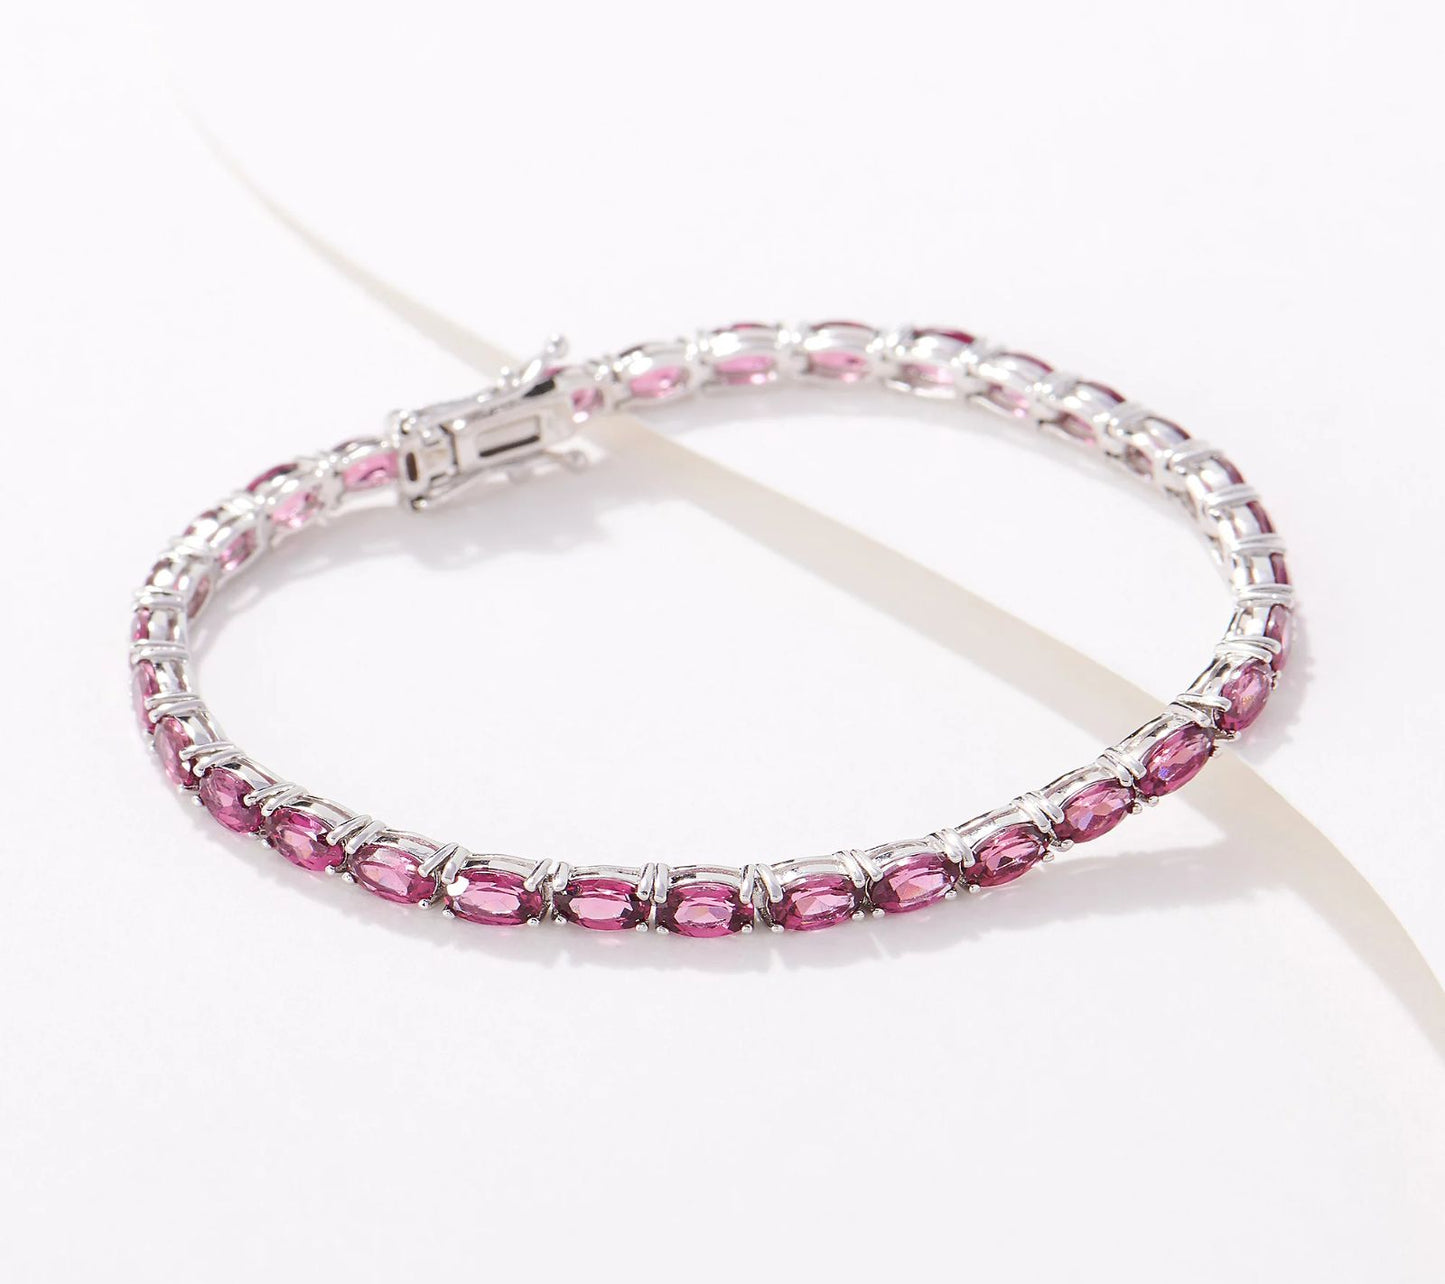 Generation Gems Oval-Cut Pink Rhodolite Tennis Bracelet Sterling. Size 7-3/4"L